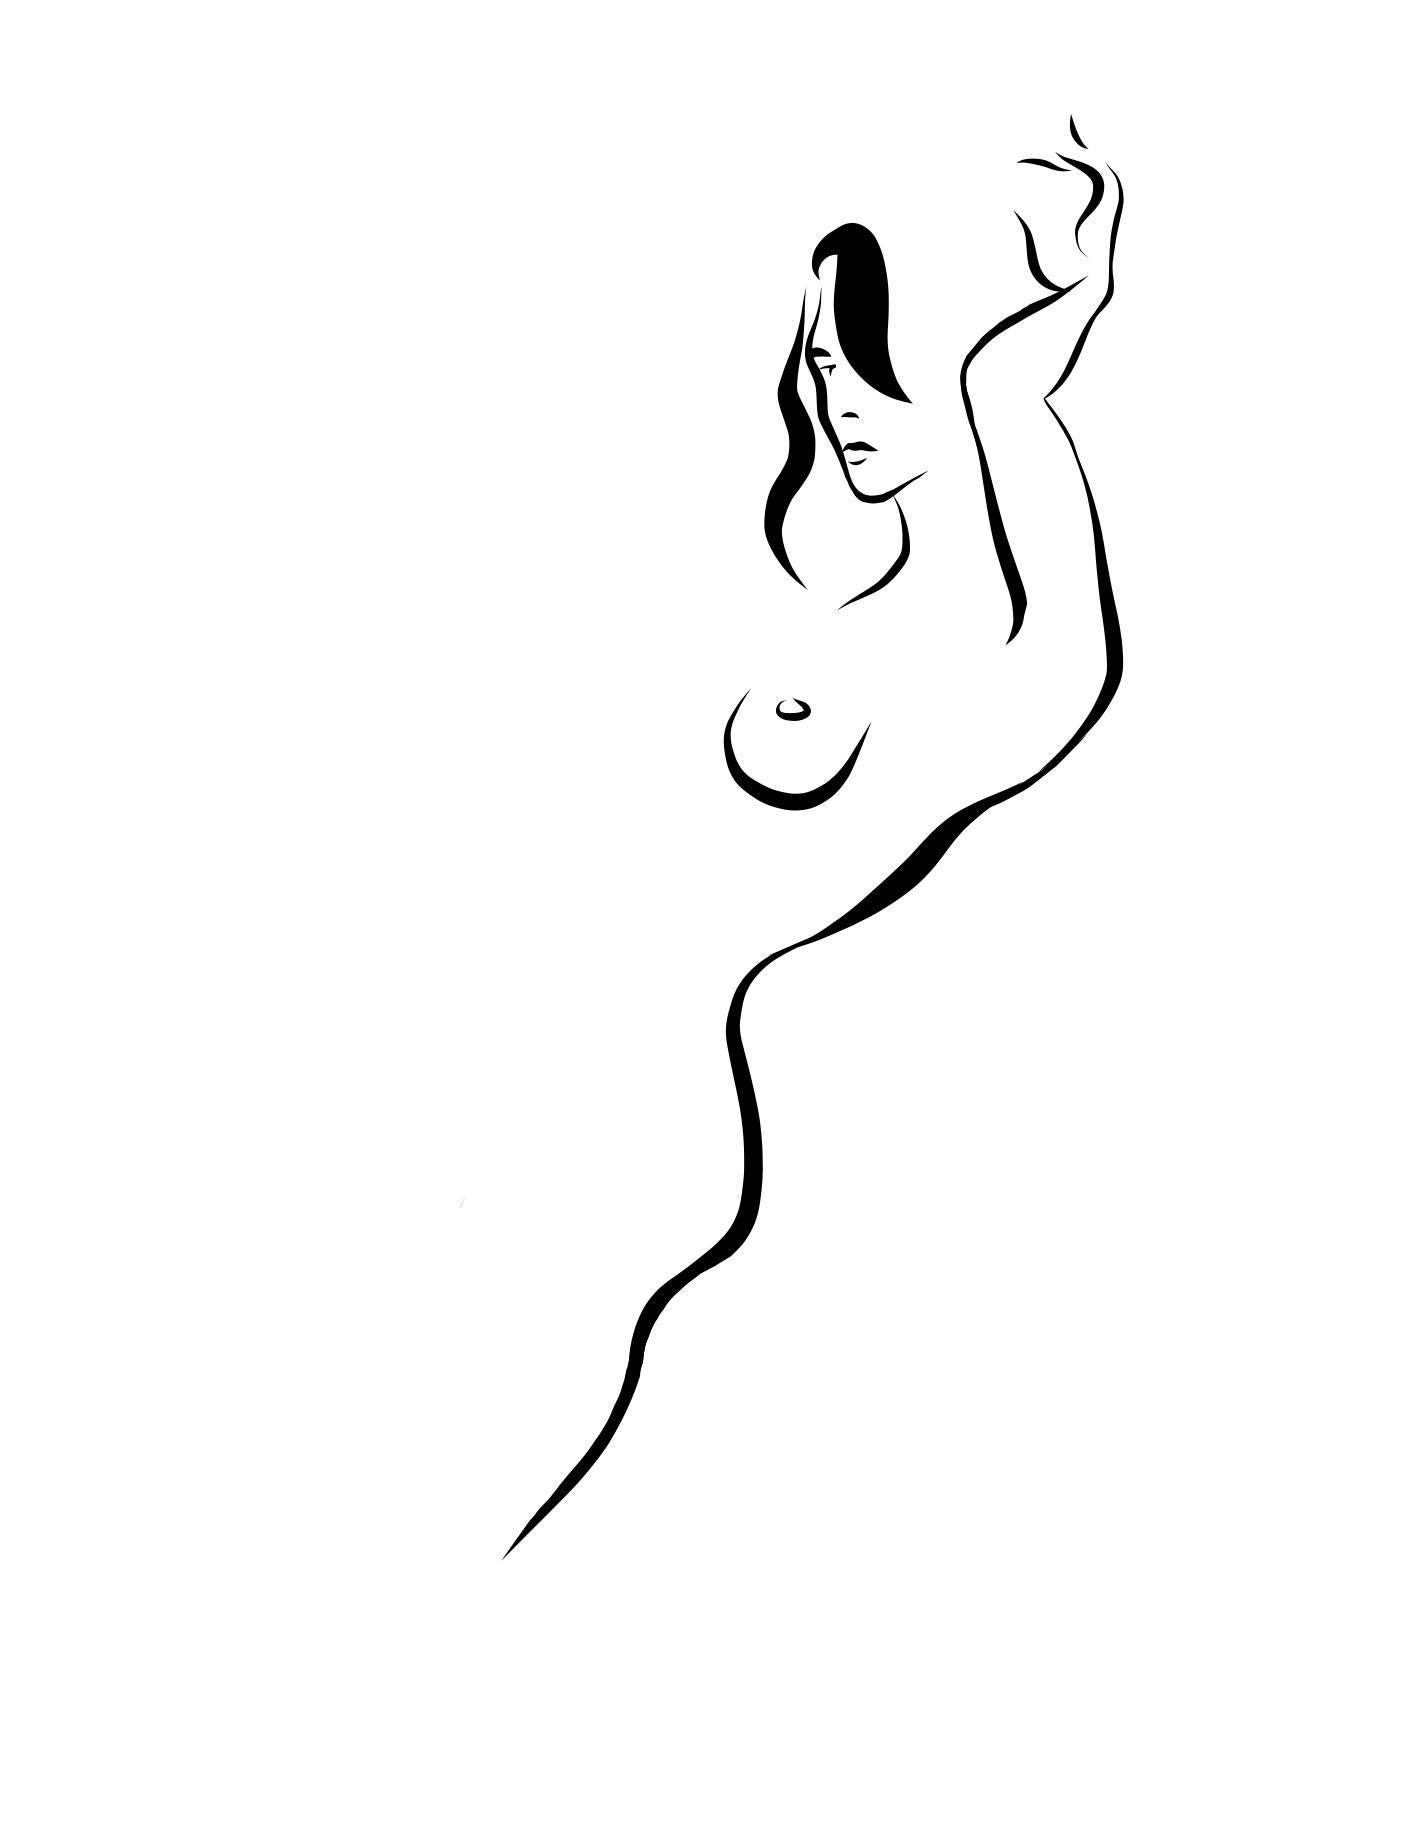 Michael Binkley Nude Print - Haiku #8  - Digital Vector Drawing B&W Leaning Female Nude Woman Figure